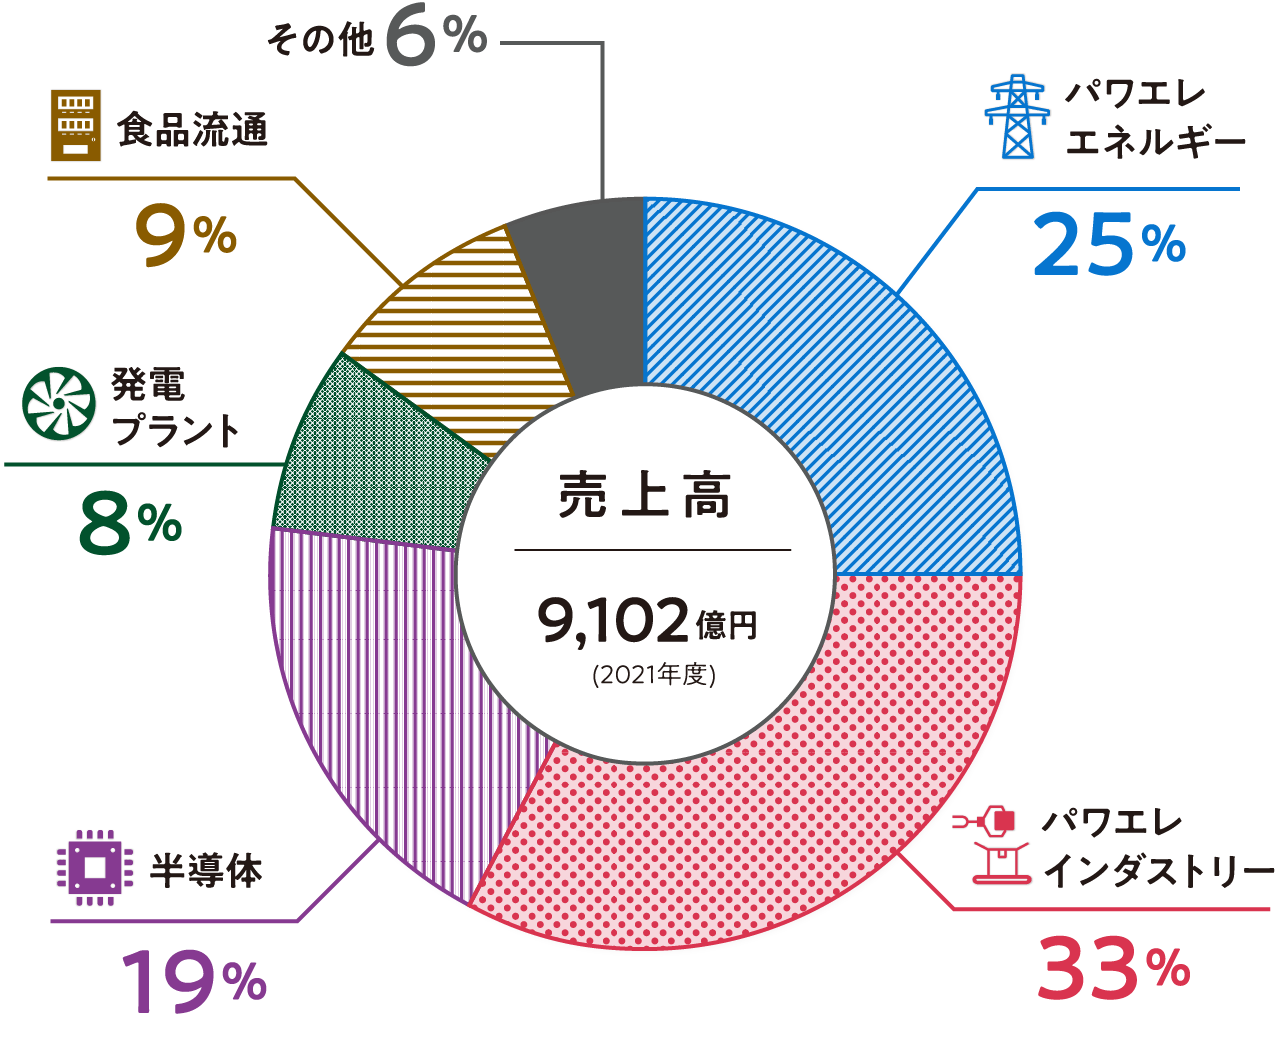 富士電機の事業グラフ:パワエレエネルギー25%、パワエレインダストリー33%、半導体19%、発電プラント8%、食品流通9%、その他6%。売上高9,102億円（2021年度）